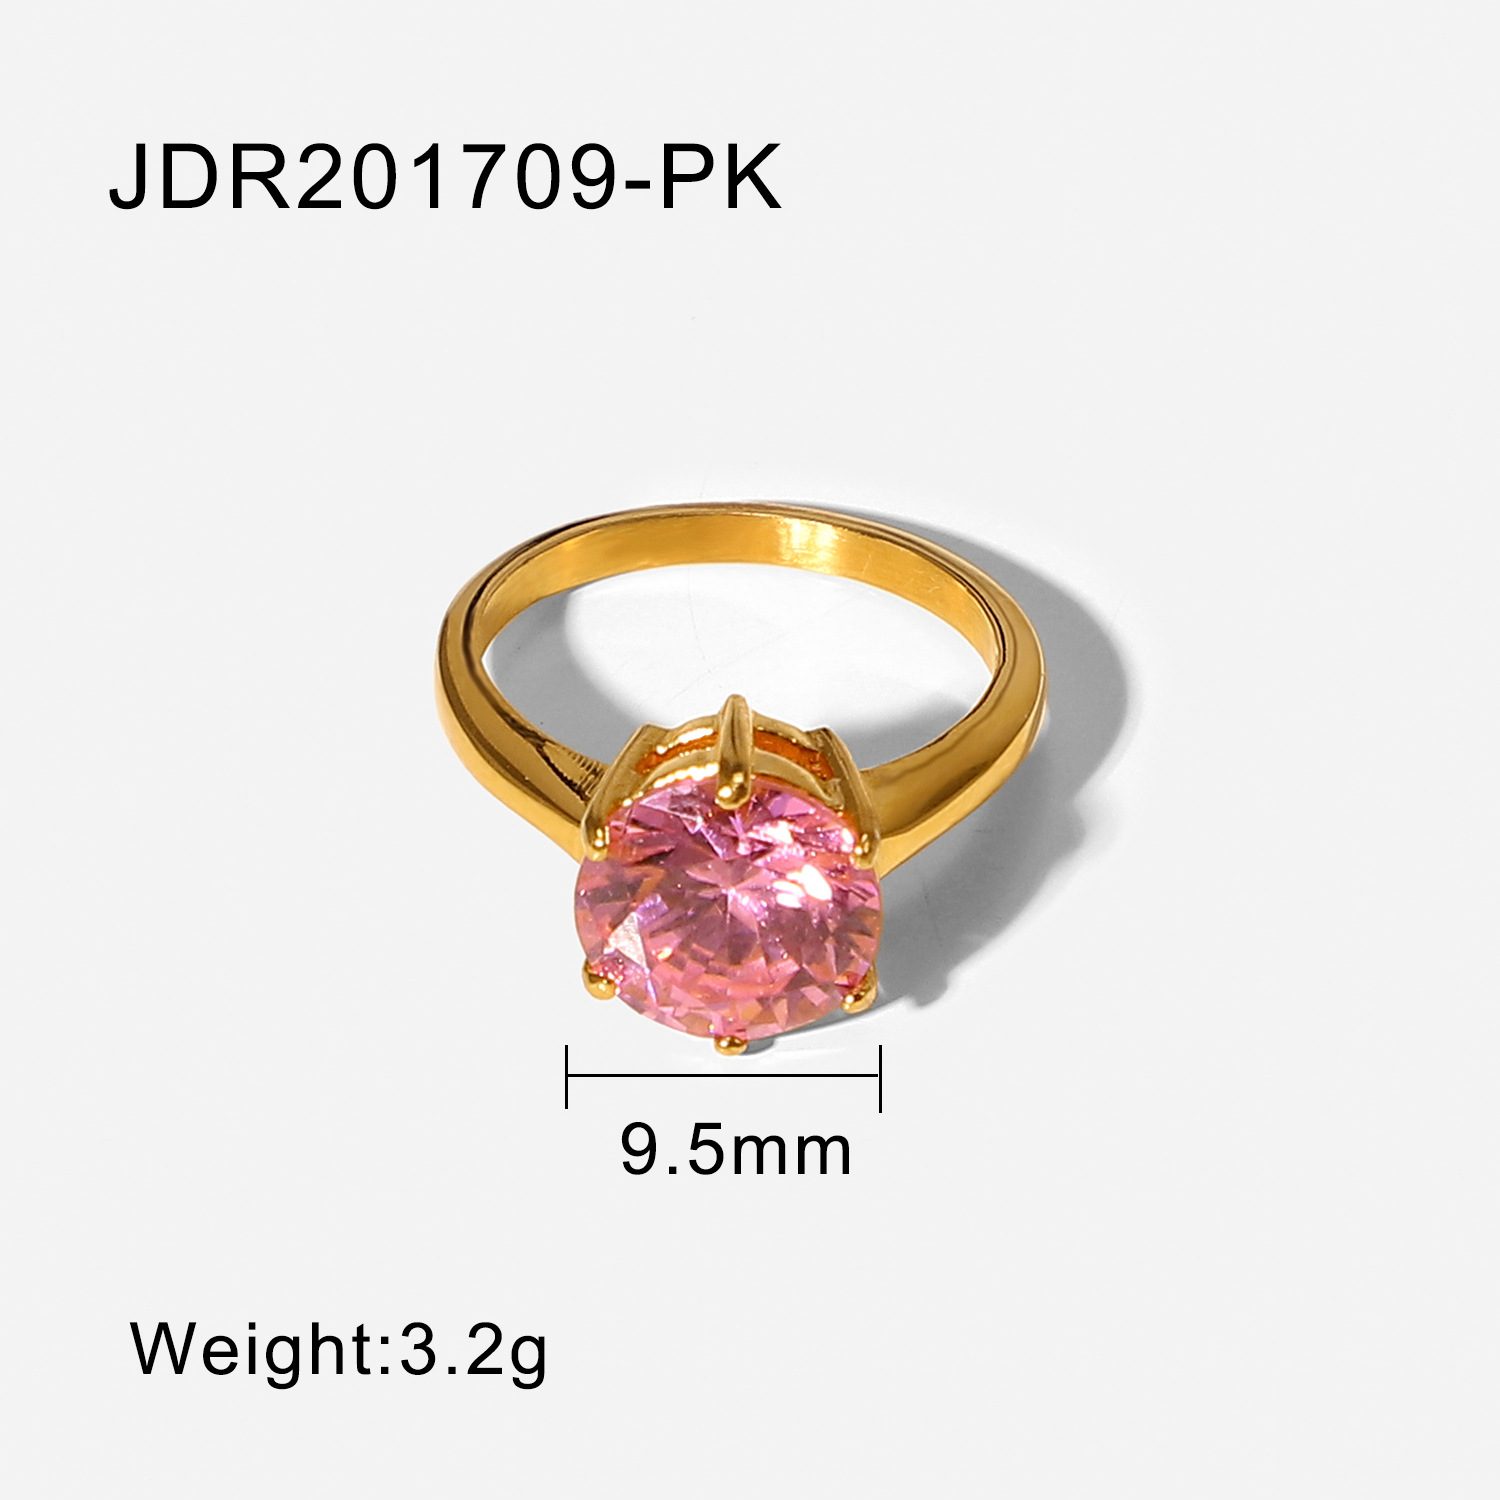 JDR201709-PK